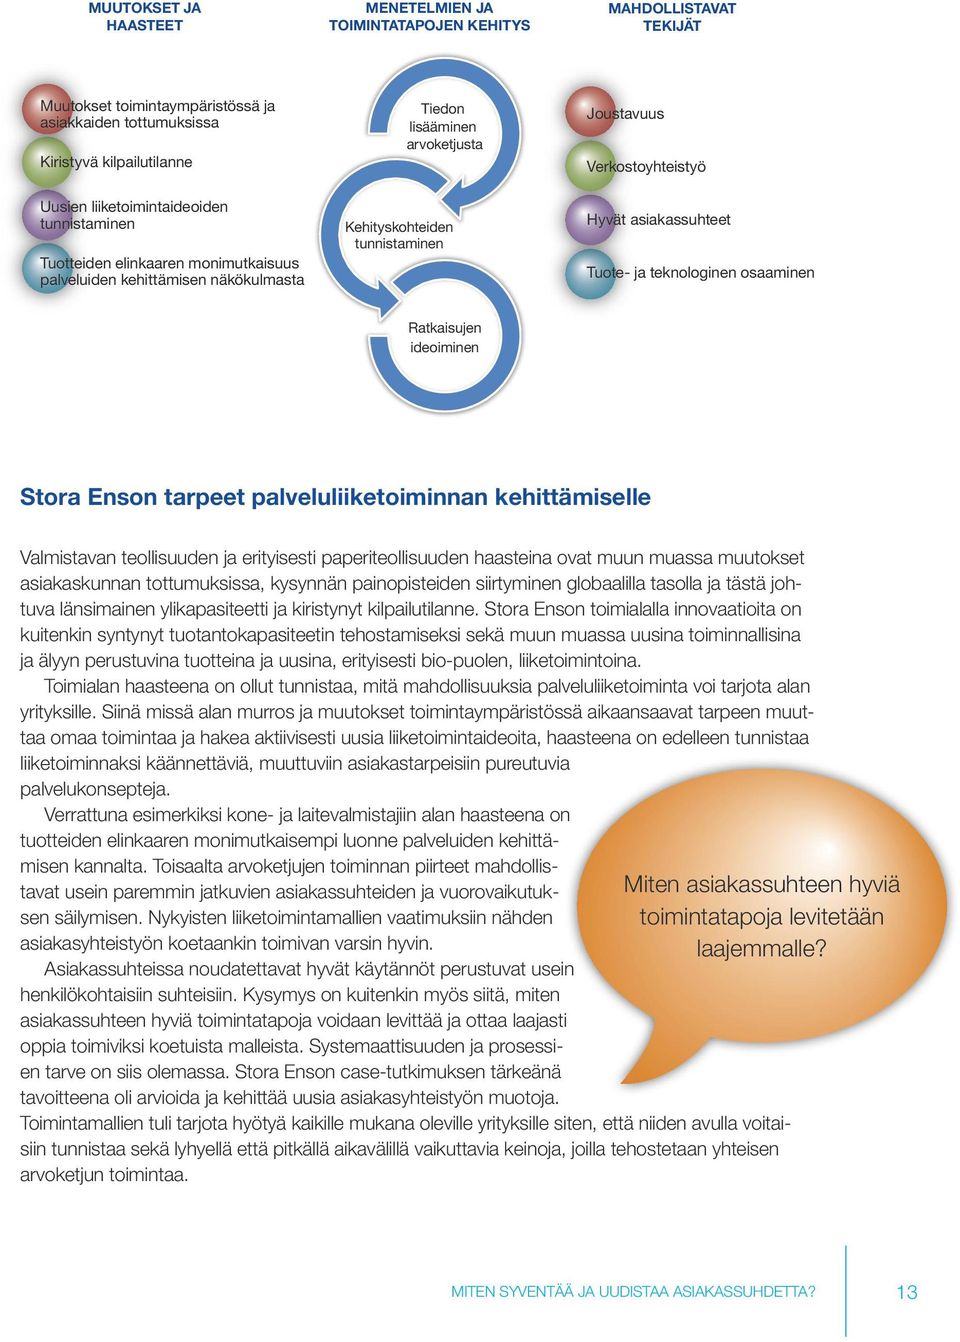 asiakassuhteet Tuote- ja teknologinen osaaminen Ratkaisujen ideoiminen Stora Enson tarpeet palveluliiketoiminnan kehittämiselle Valmistavan teollisuuden ja erityisesti paperiteollisuuden haasteina